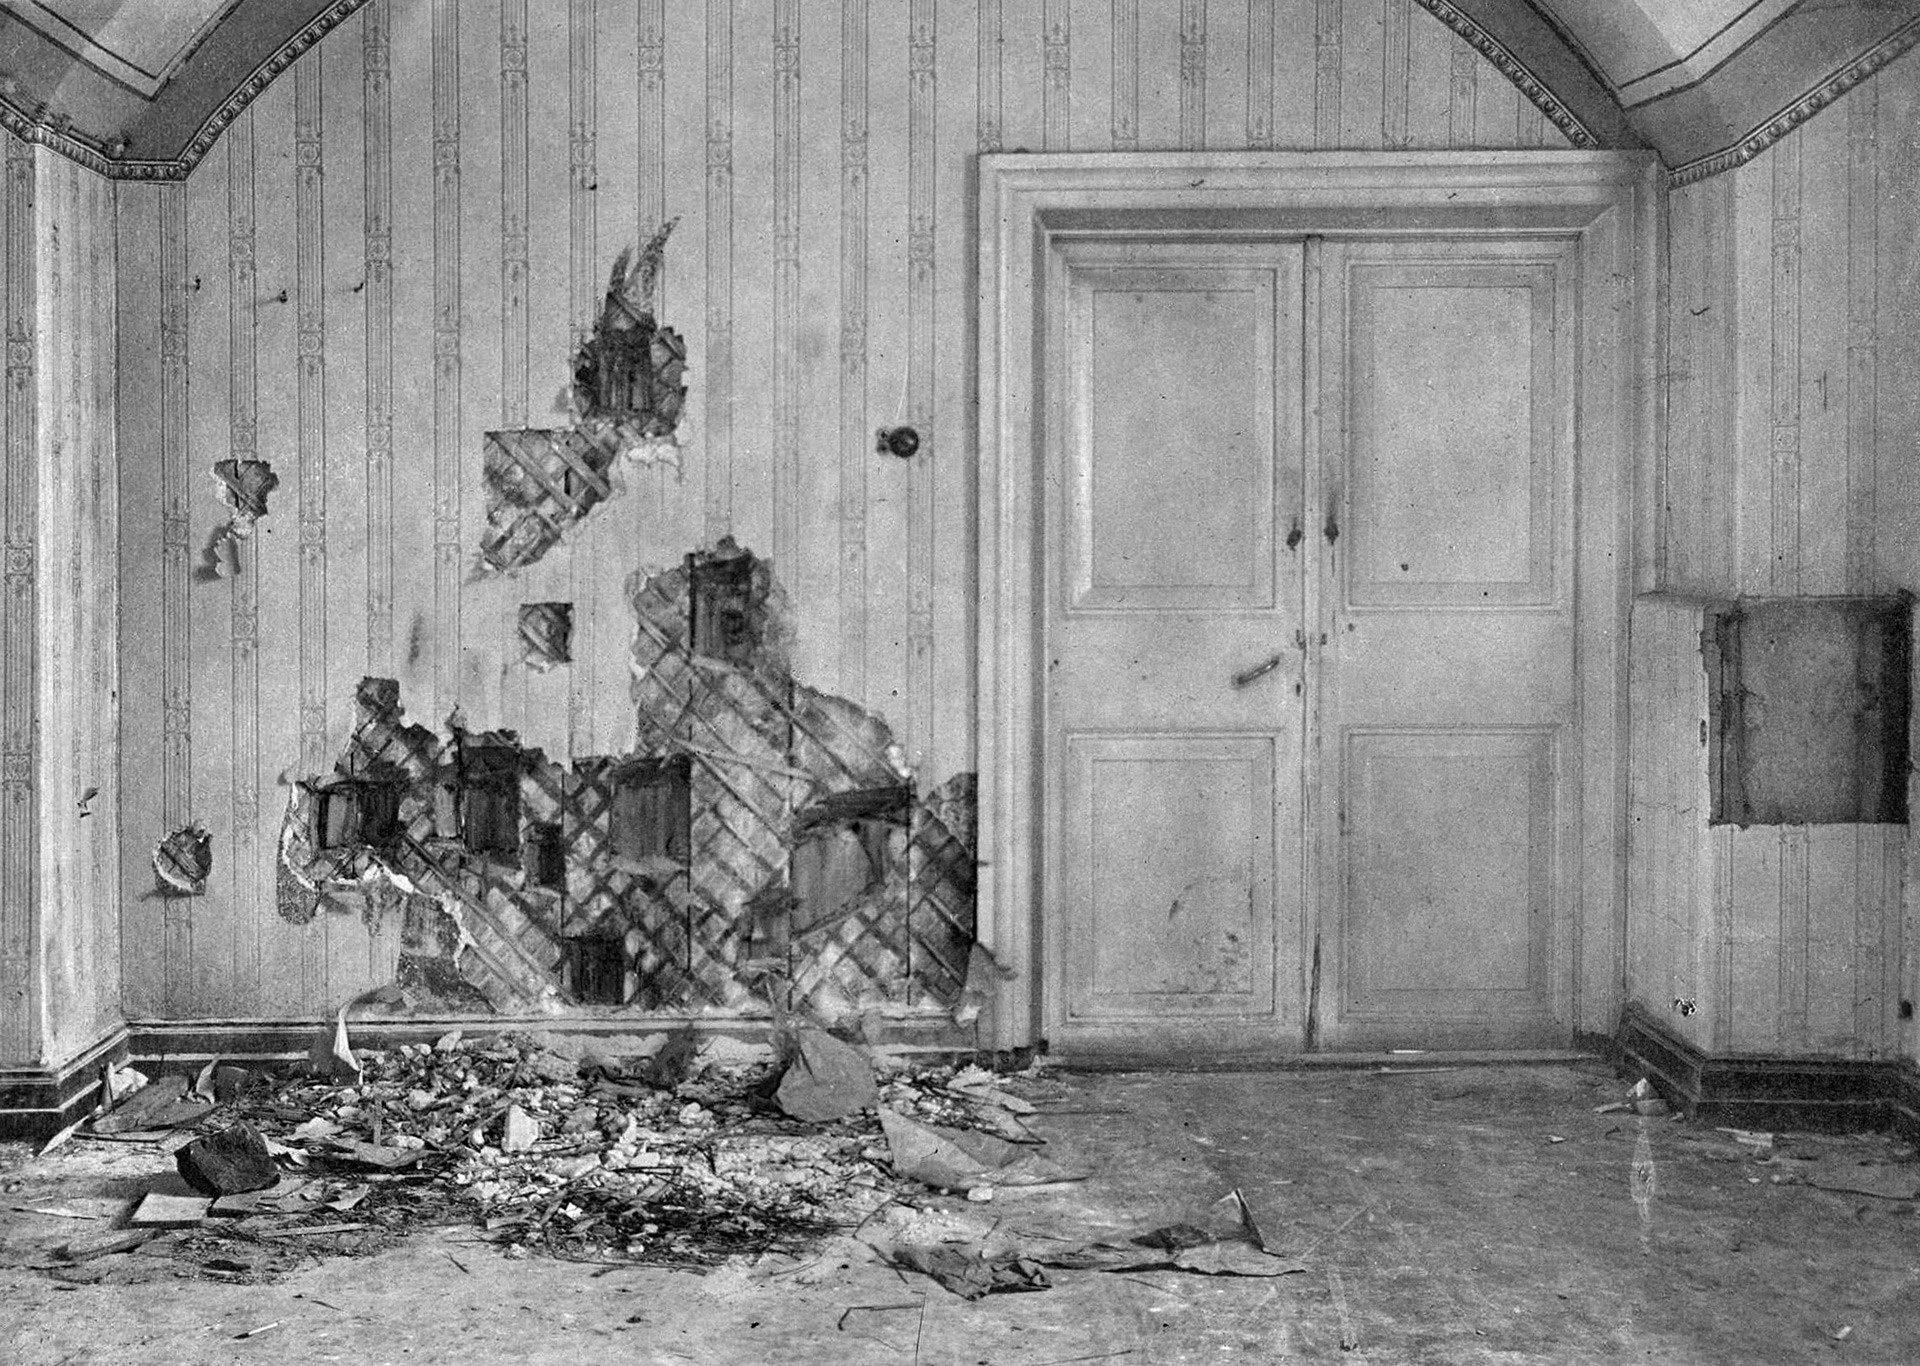 La stanza di Casa Ipatev dove lo zar Nicola II, i membri della sua famiglia e della servitù furono assassinati 